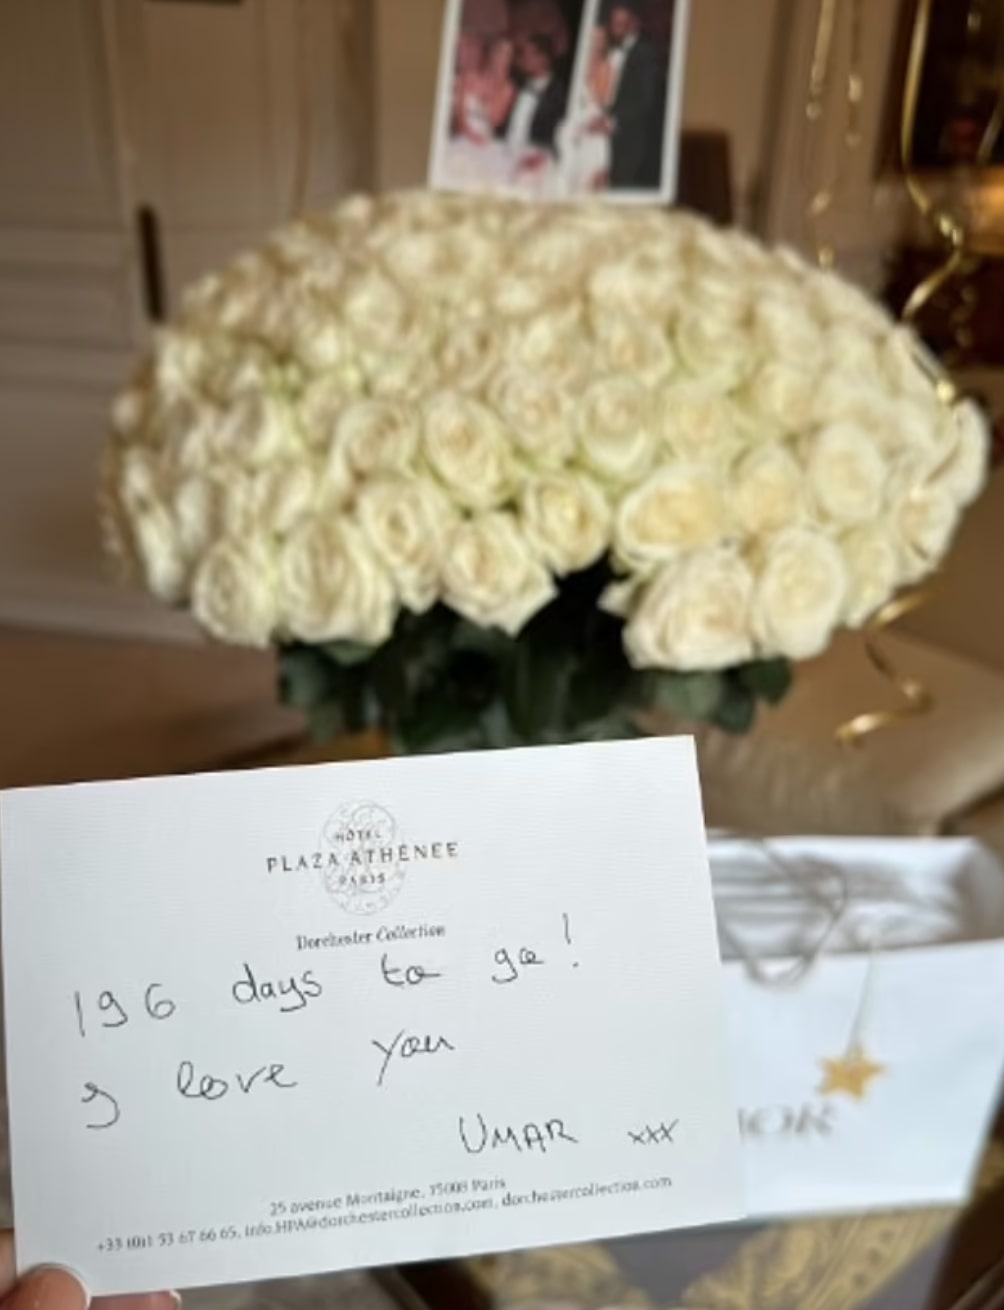 Umar hinterließ ihr vor der Hochzeit einen riesigen Strauß weißer Rosen mit einer süßen Karte